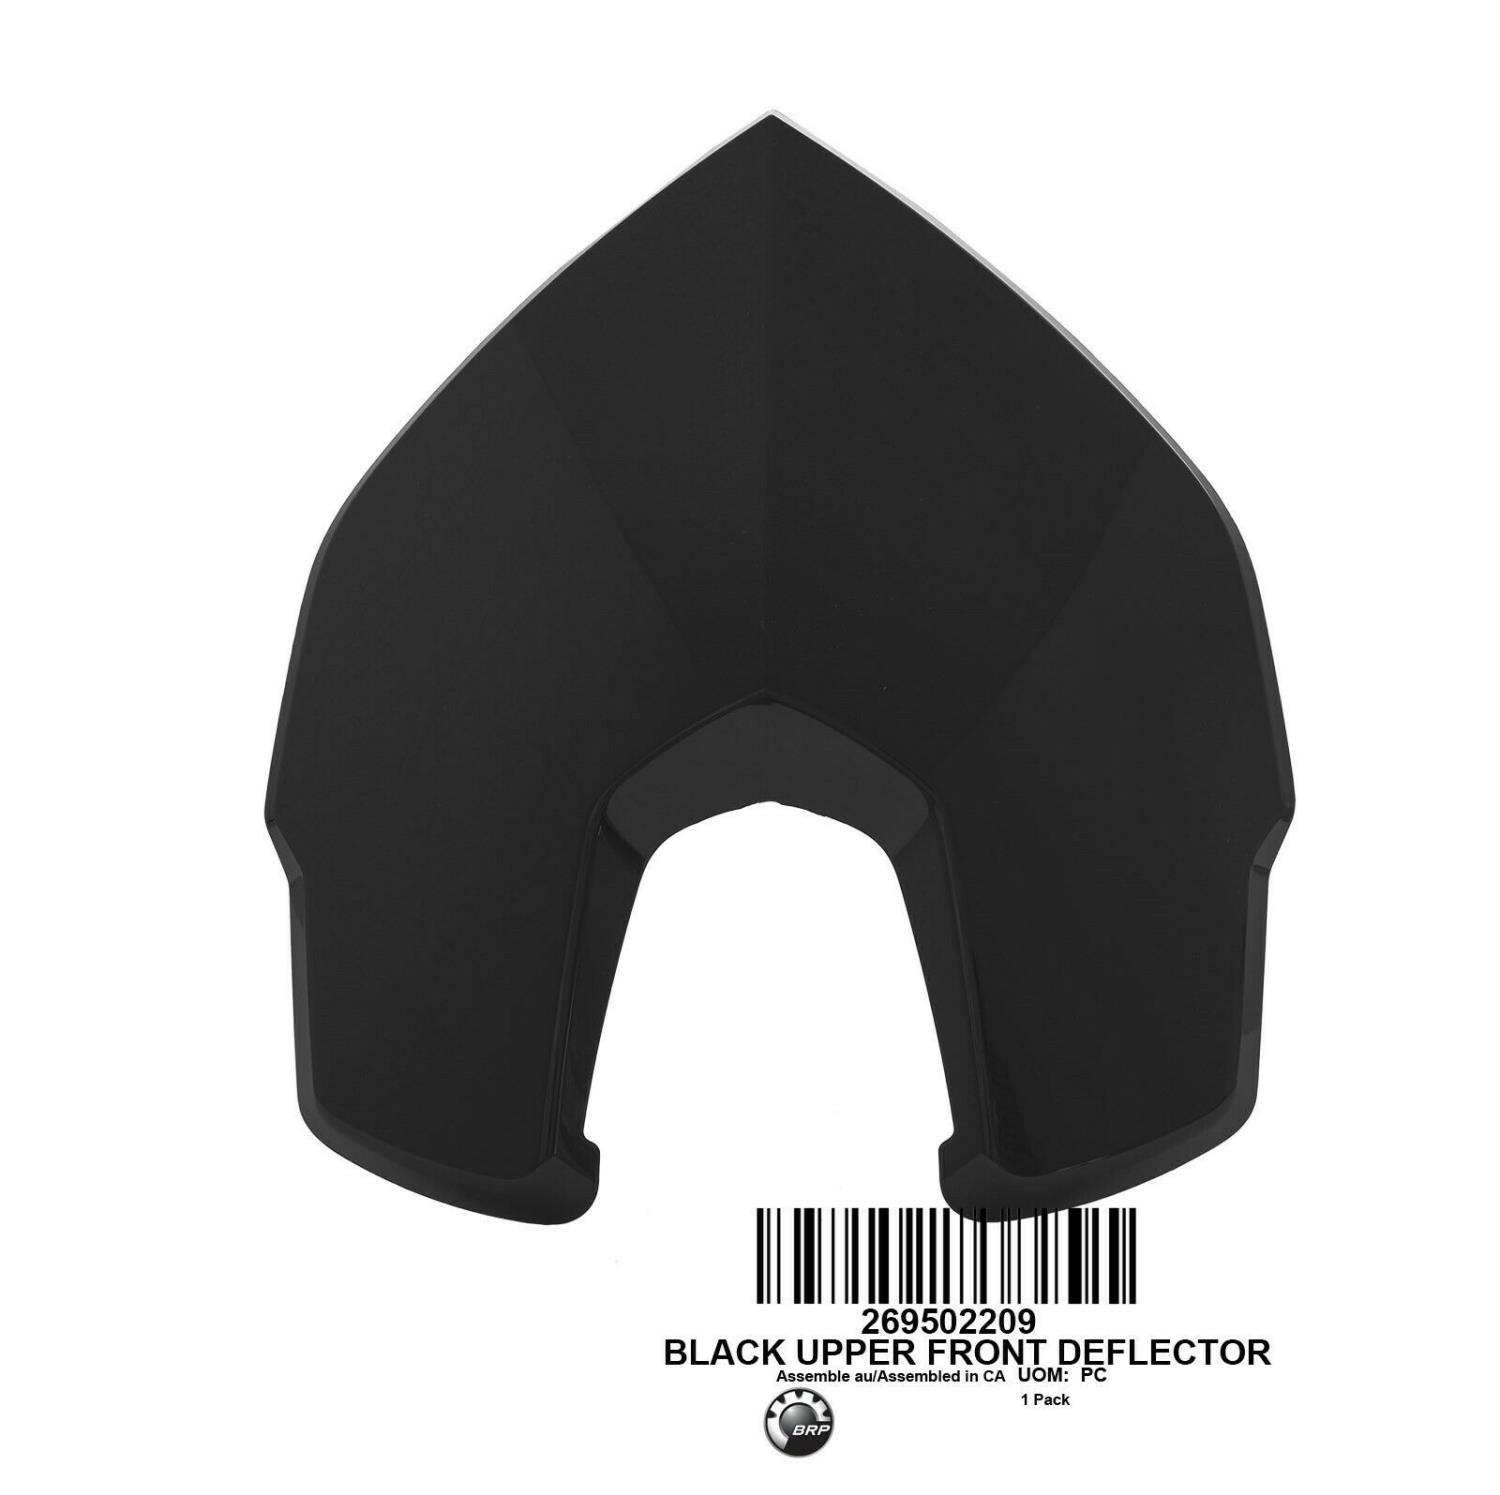 BLACK UPPER FRONT DEFLECTOR